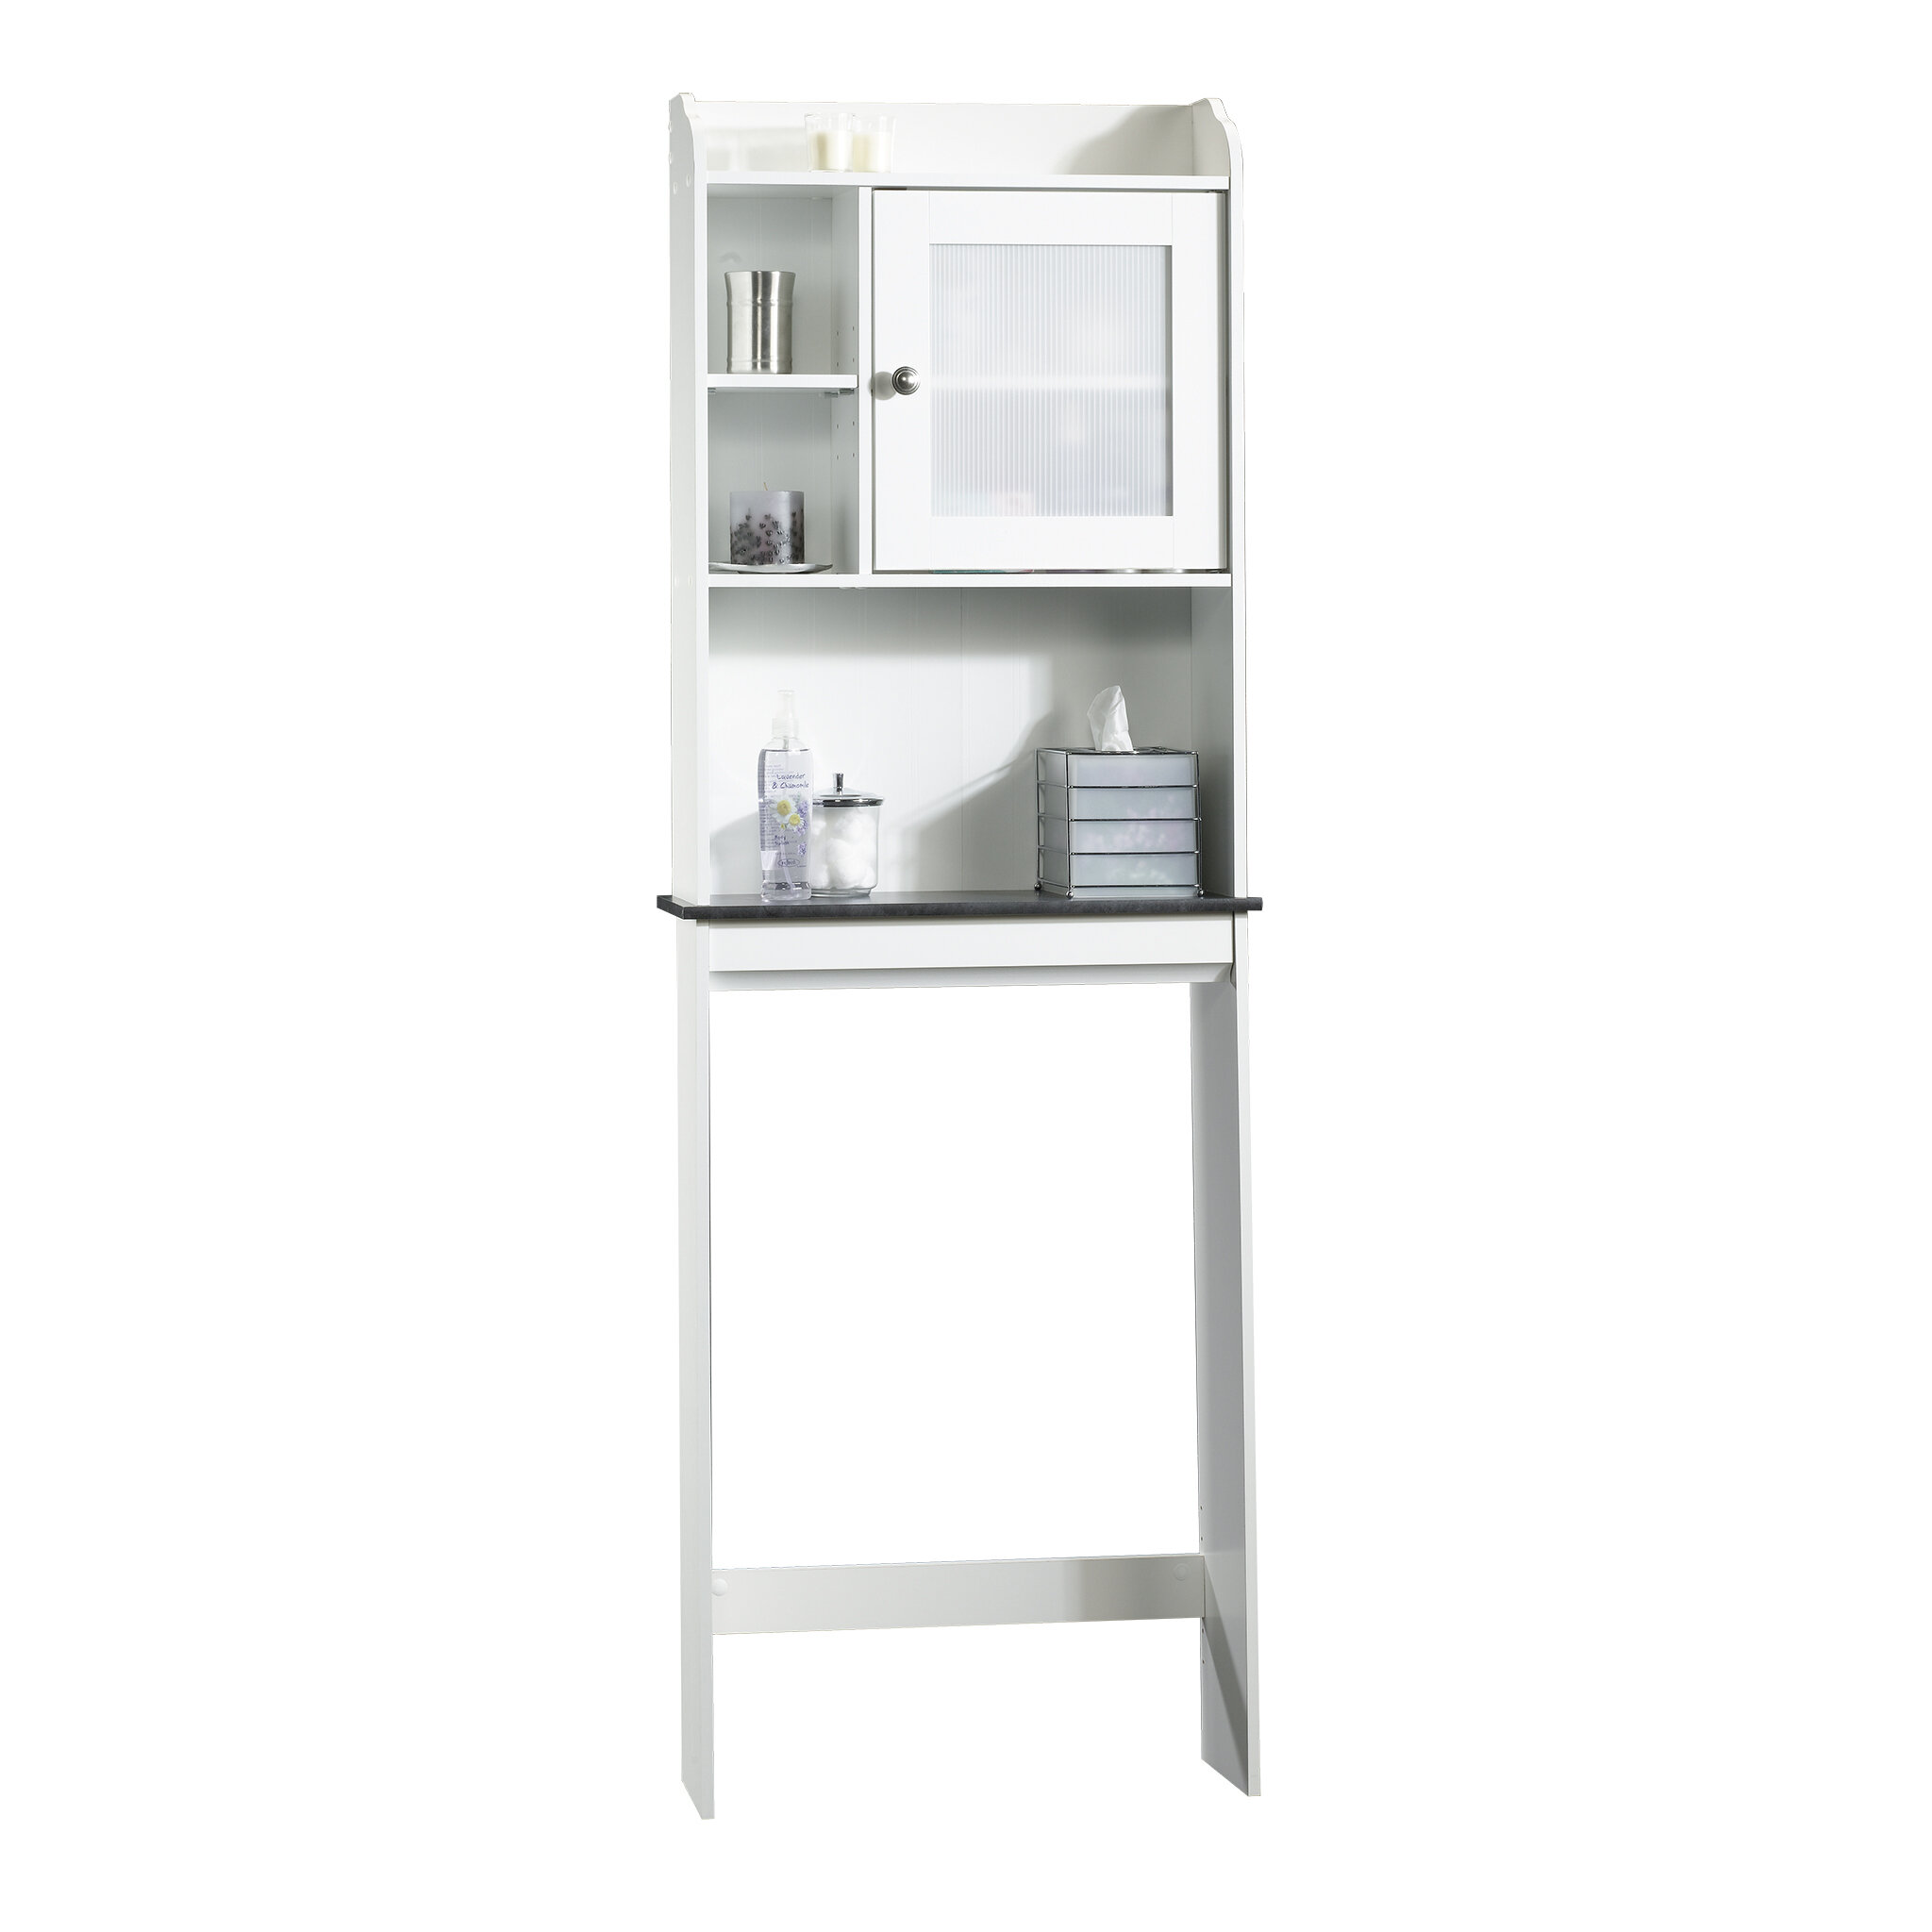 Sauder Bathroom Floor Cabinet White Linen Storage Kitchen Organizer Shelf New 